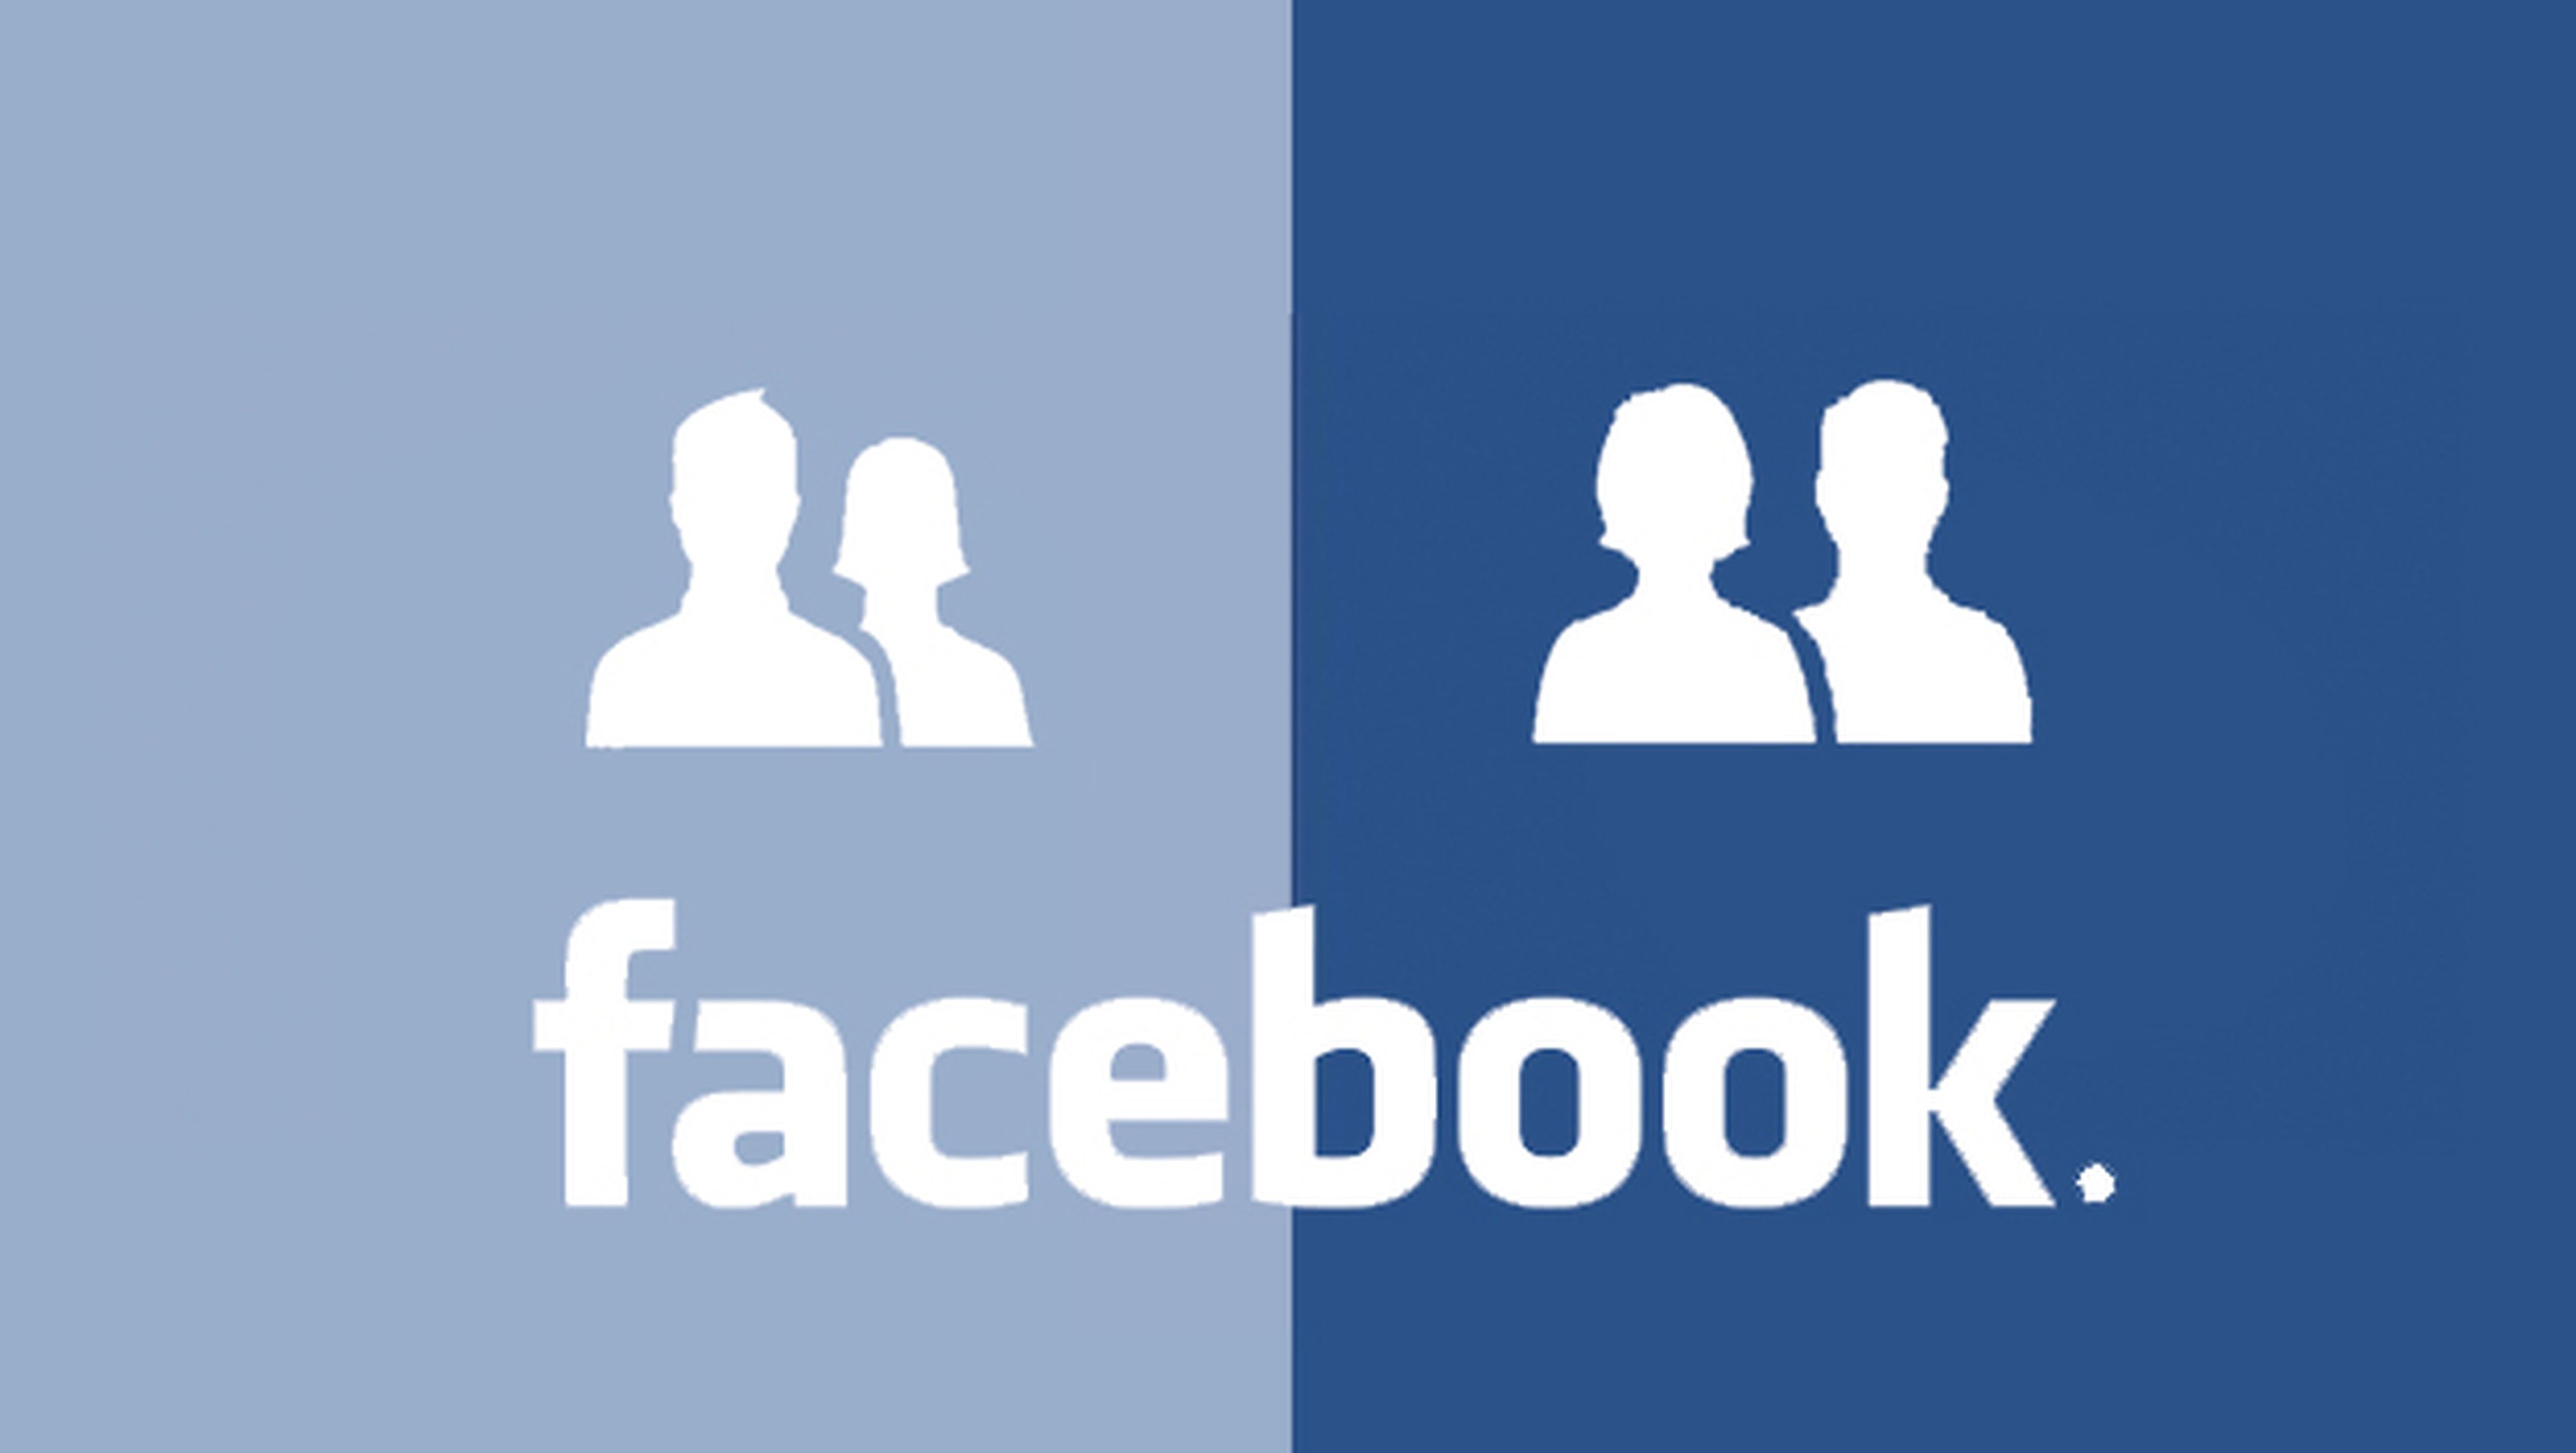 Facebook rediseña el icono de "amigos" en pro de la igualdad